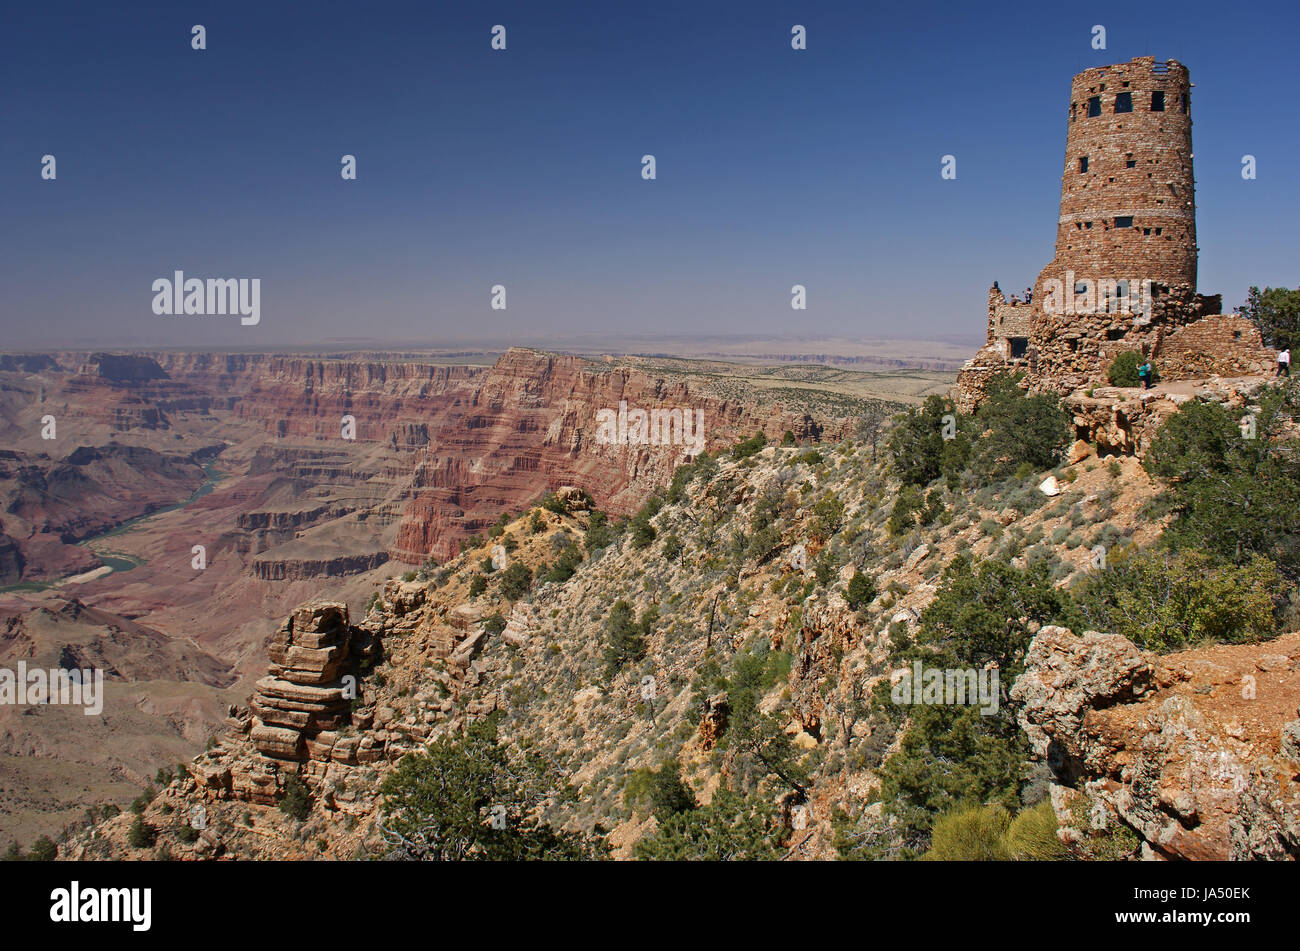 usa, america, arizona, watchtower, tower, tree, trees, desert, wasteland, Stock Photo